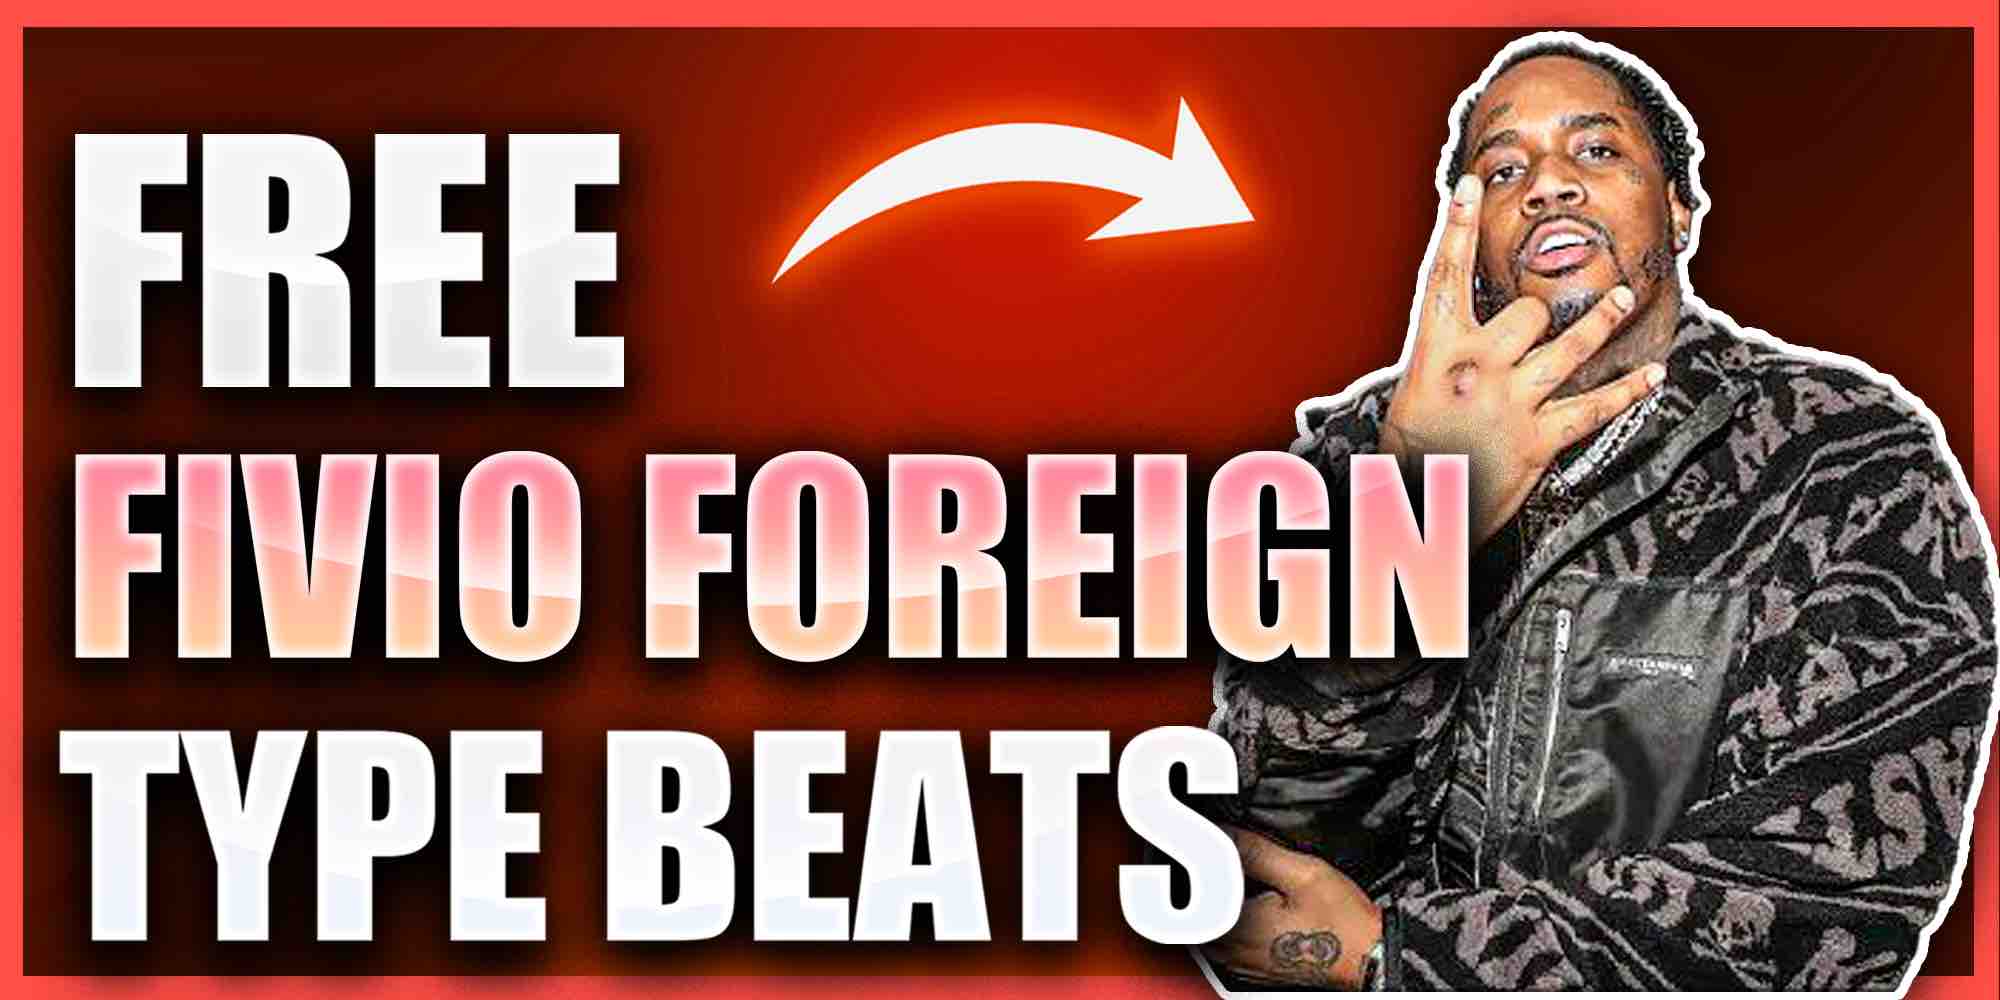 Free Fivio Foreign Type Beat